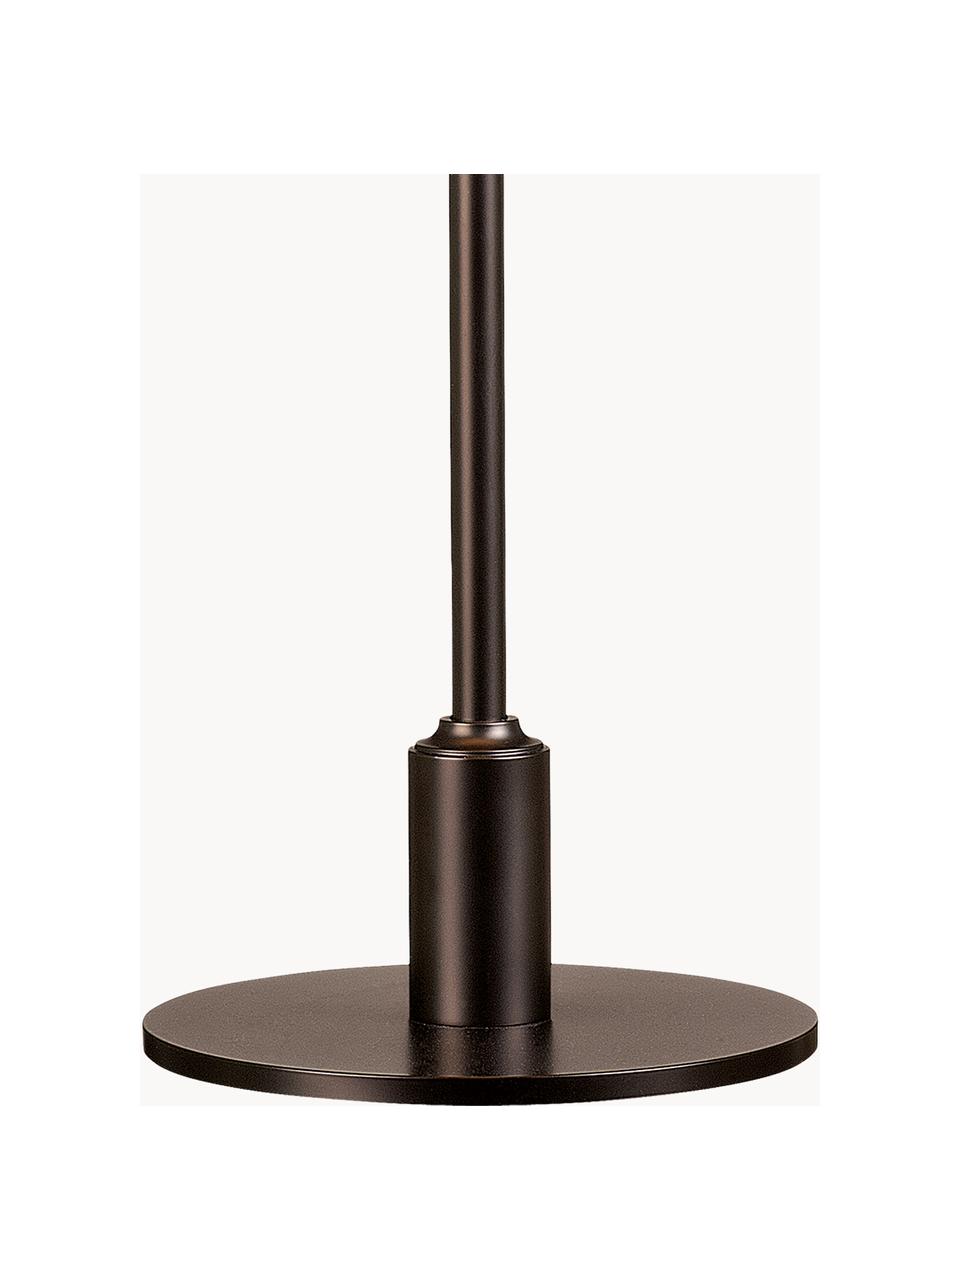 Grote tafellamp PH 3½-2½, mondgeblazen, Lampenkap: gecoat aluminium, opaalgl, Zonnengeel, koper, Ø 33 x H 45 cm